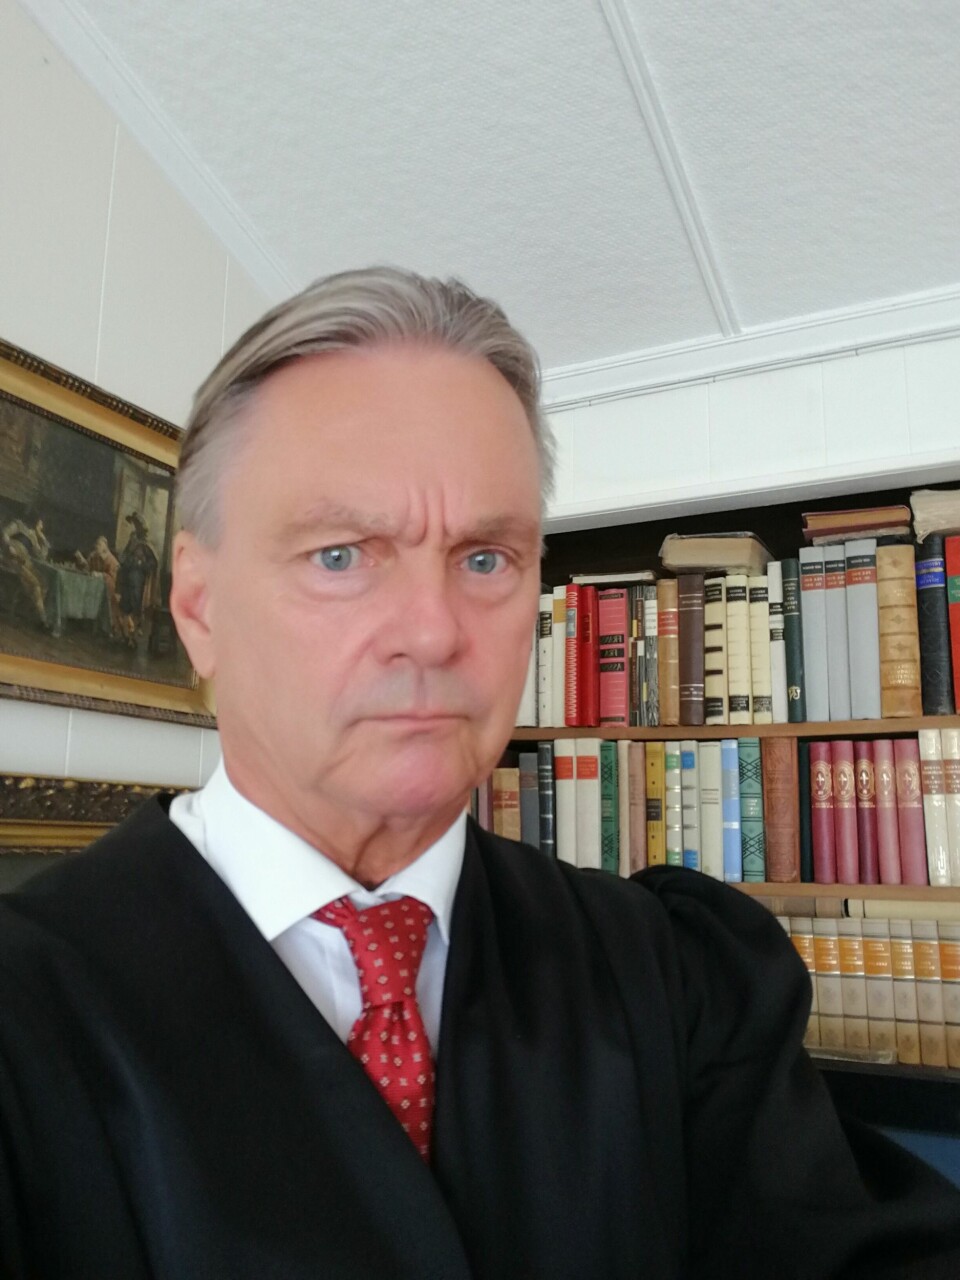 SØKSMÅL: Advokat Trond Sivertsvik representerer hundeeieren i rettssaken som går i Oslo tingrett i oktober.